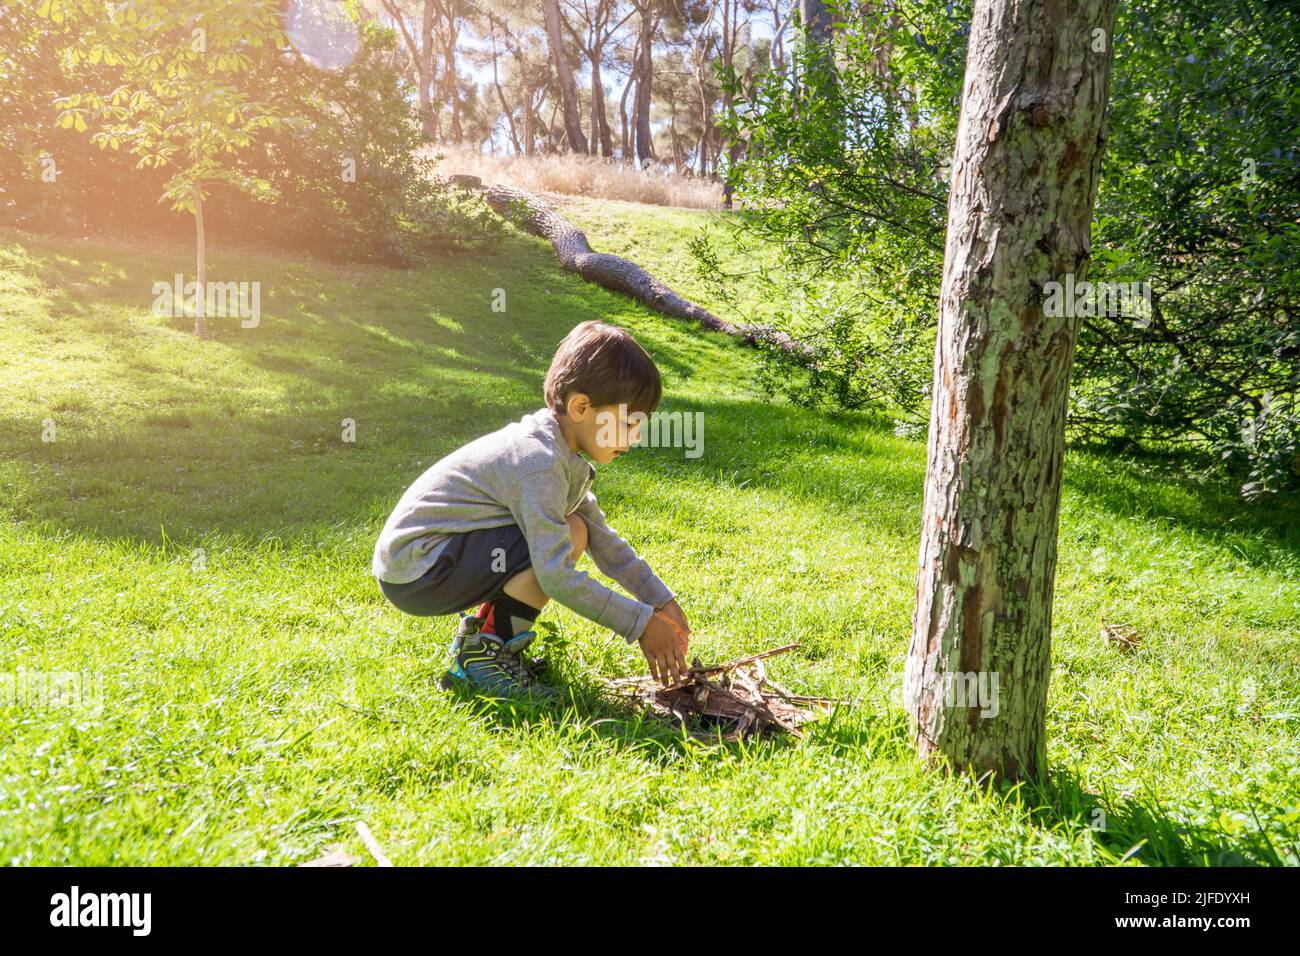 Junge sammelt Holz für einen Feuerkamp auf einem Sommerlager. Urlaubskonzept, Natur leben. Stockfoto